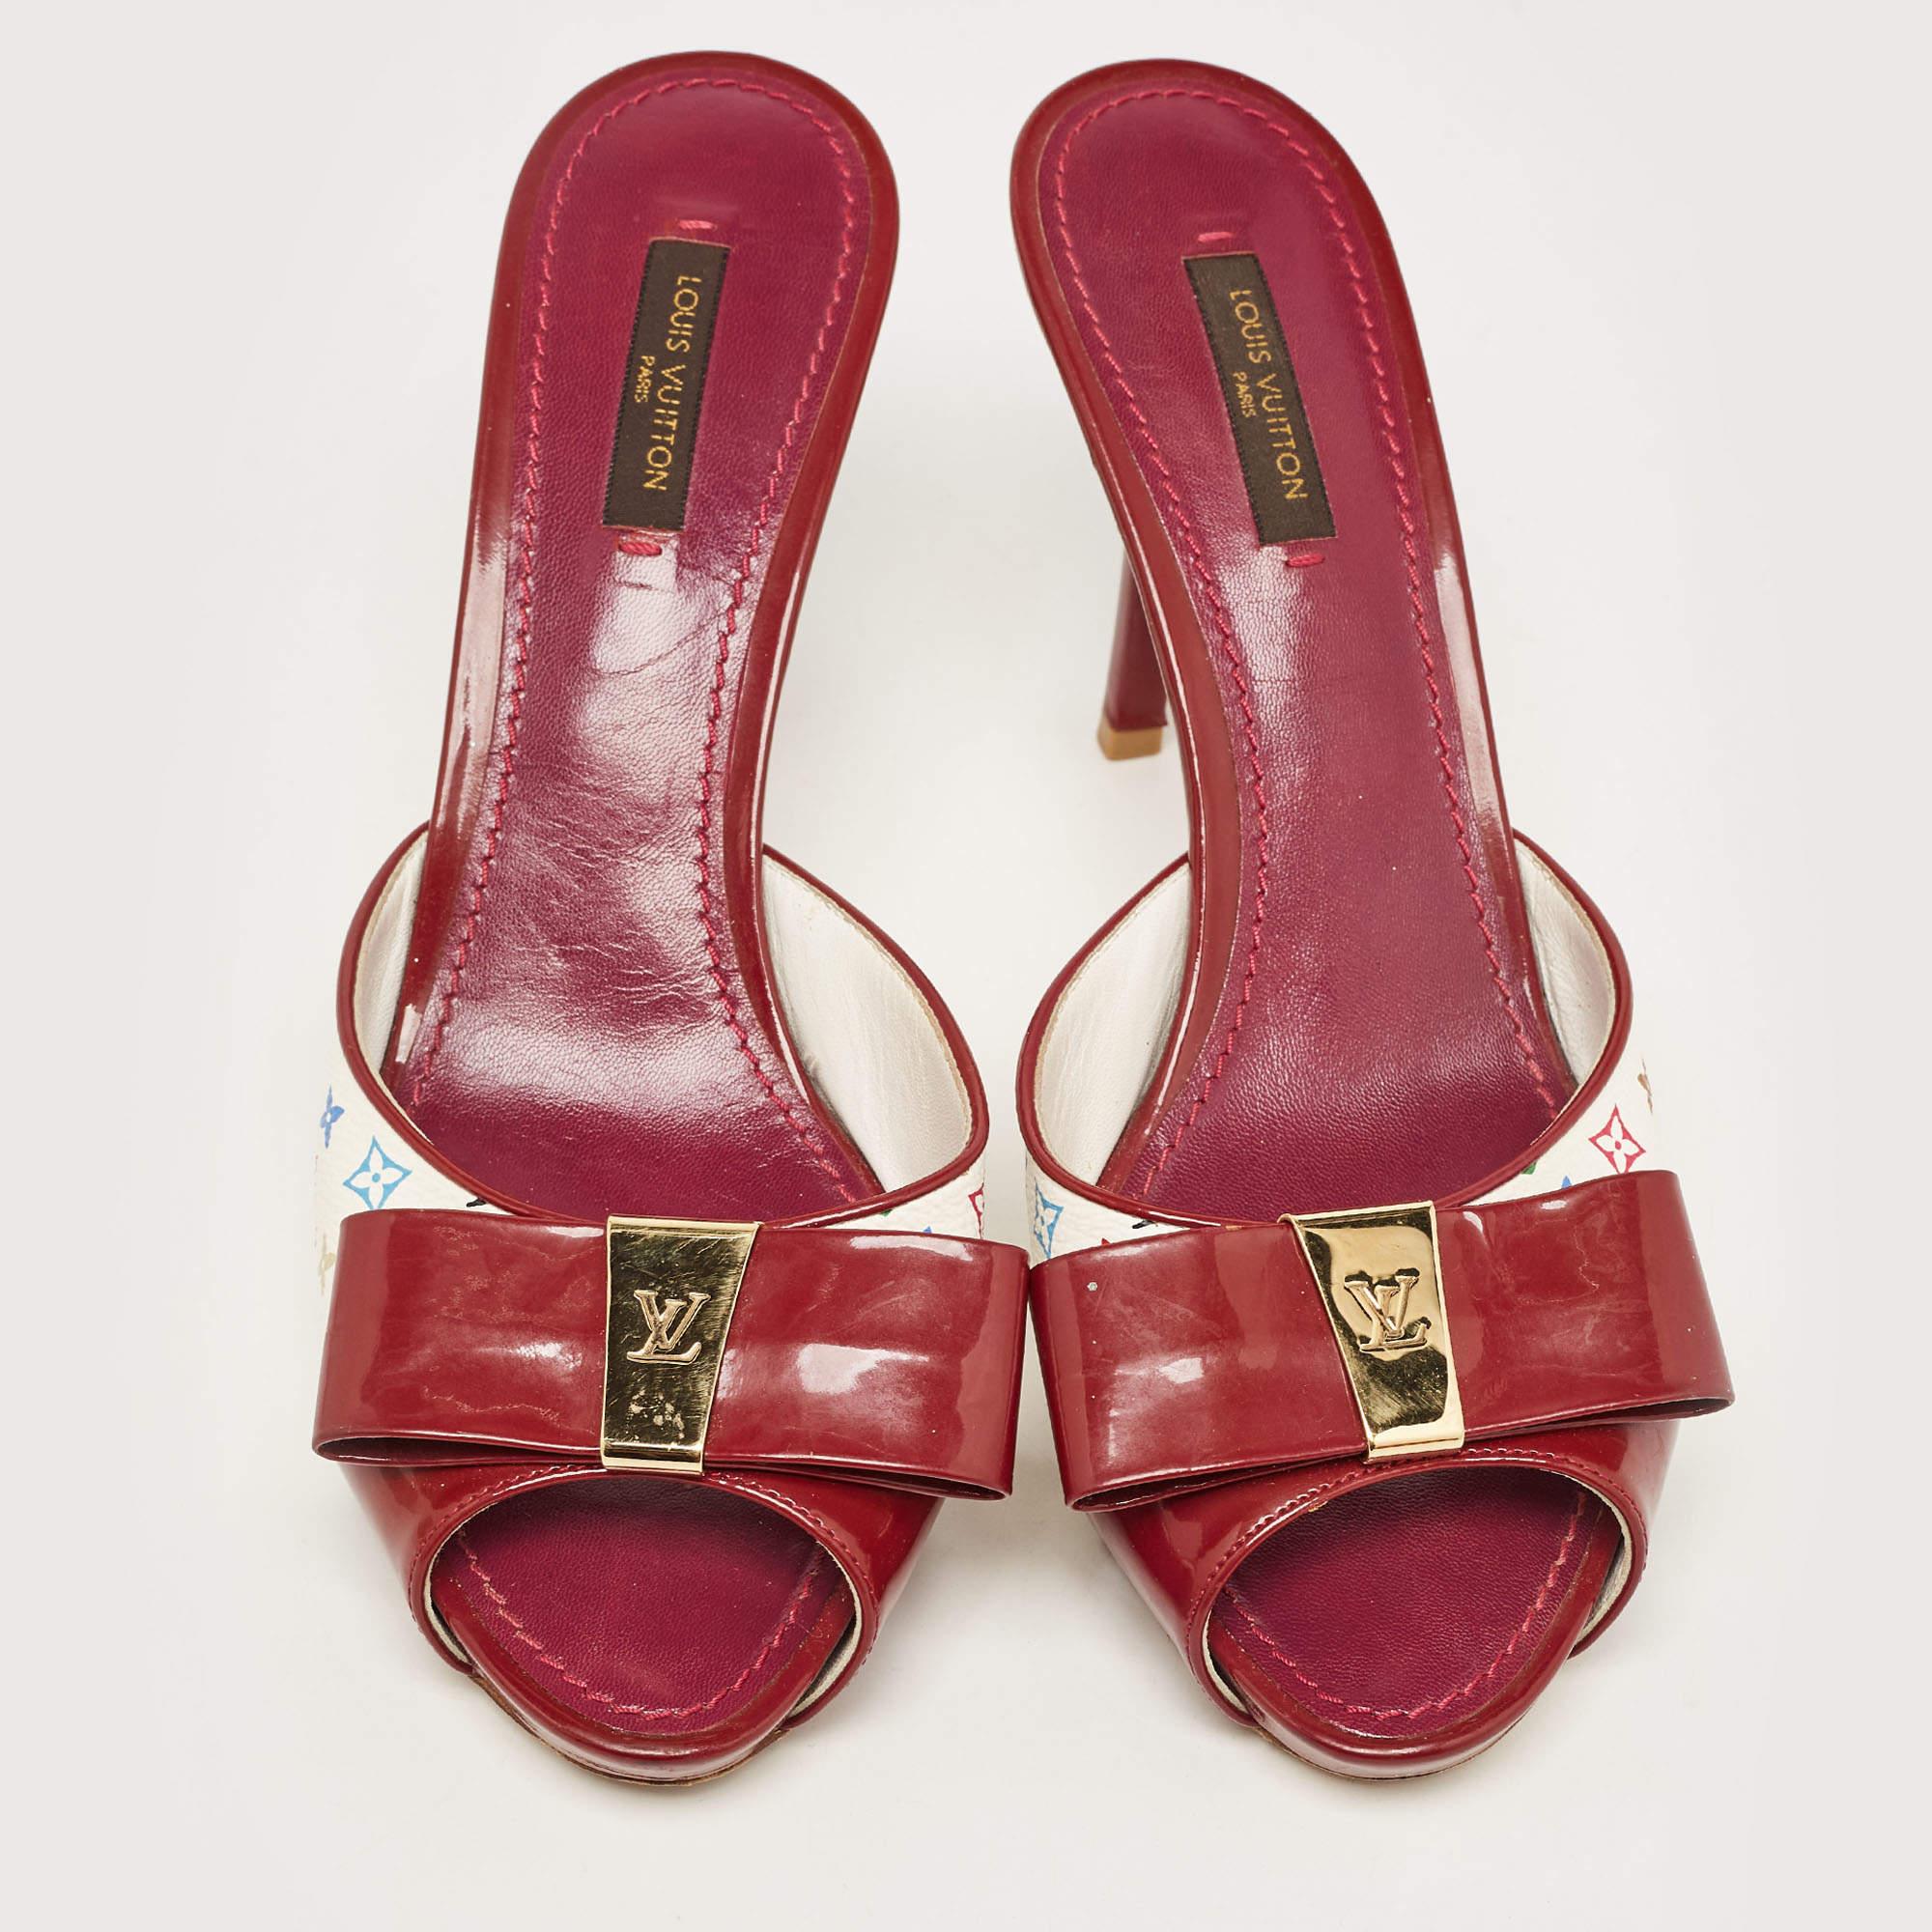 Apportez une touche d'élégance à votre look du jour avec ces sandales en toile et cuir verni Monogram de Louis Vuitton. Elles sont dotées d'un nœud et d'un talon fin.

